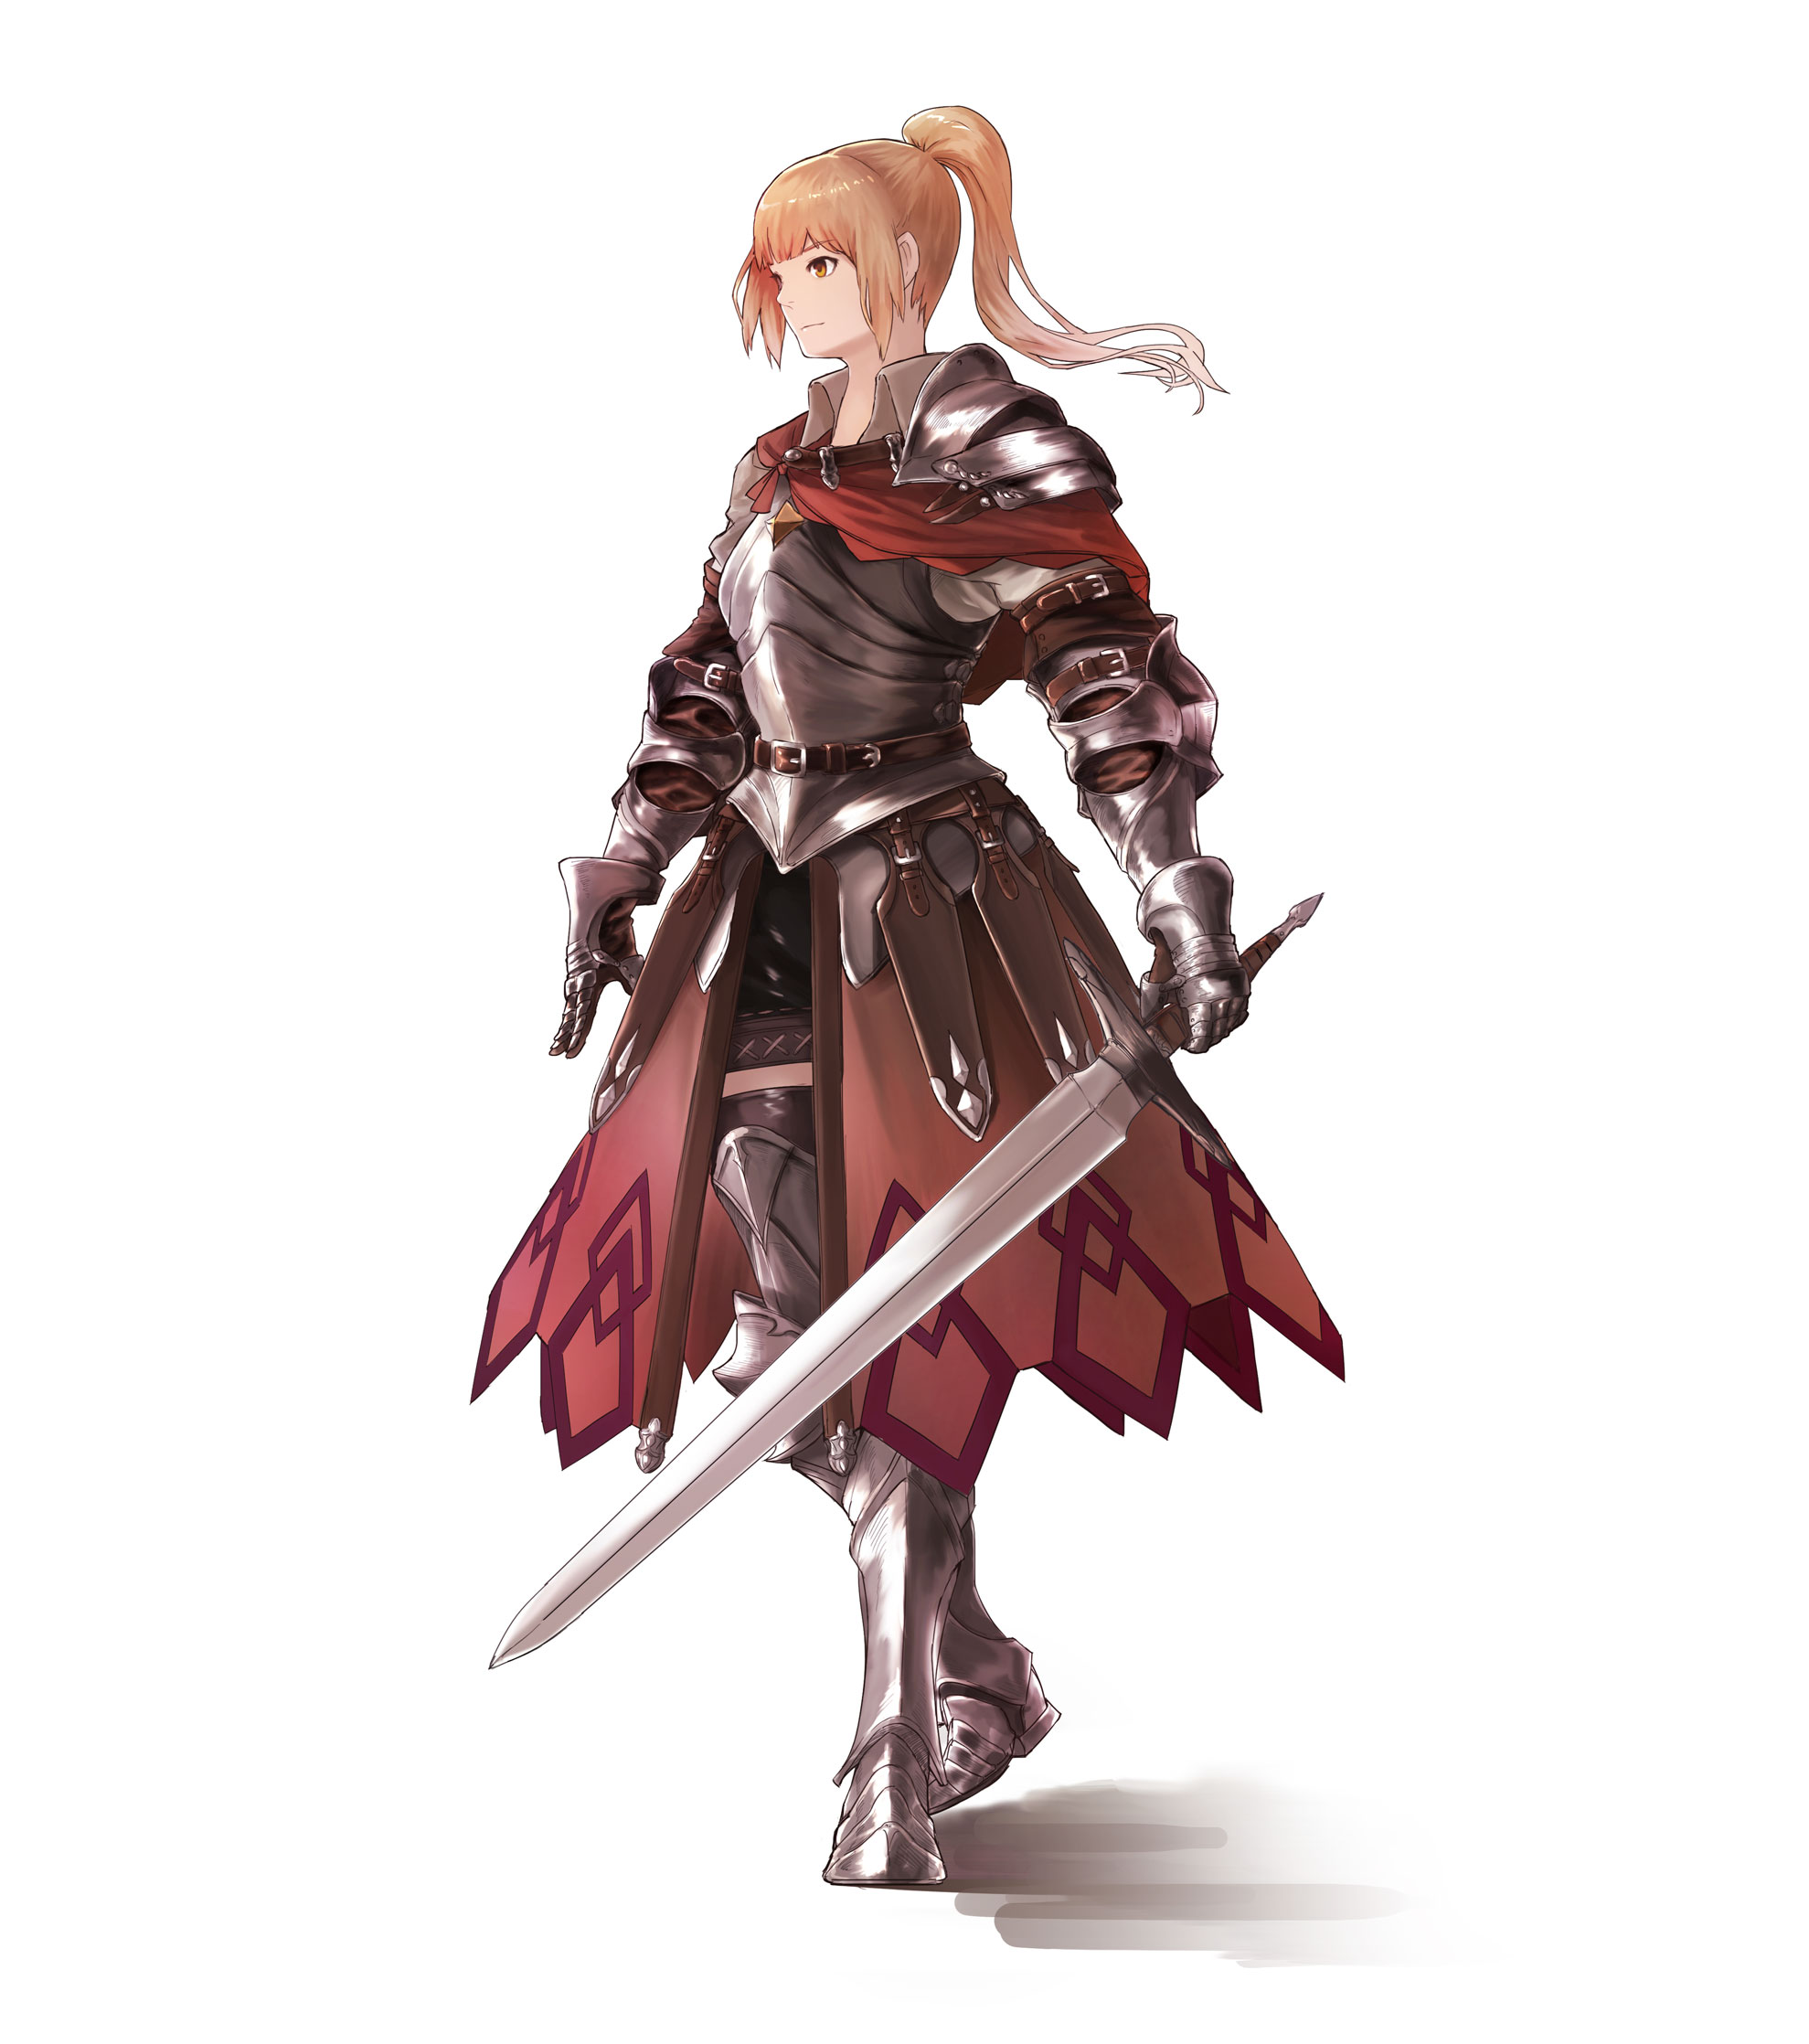 ふららCOMMS OPEN on Twitter Sketch of a female knight sketch  illustration art conceptart armor anime painting  httpstcohskg37IbKU  Twitter